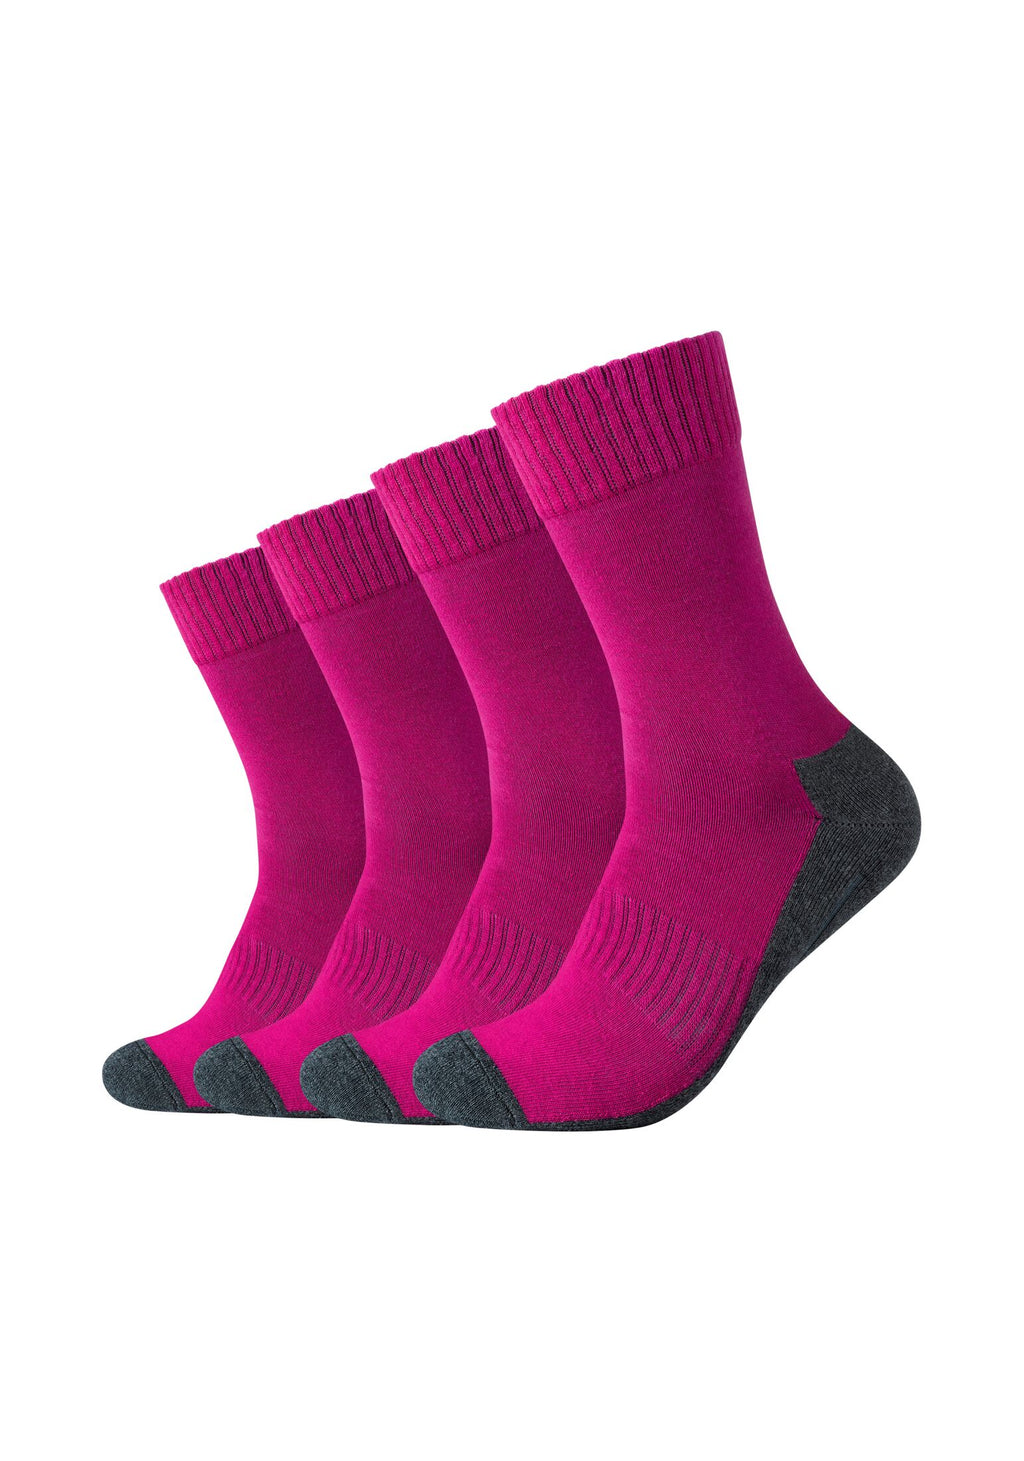 Sport-Socken Pro-Tex-Funktion – 4er Pack ONSKINERY